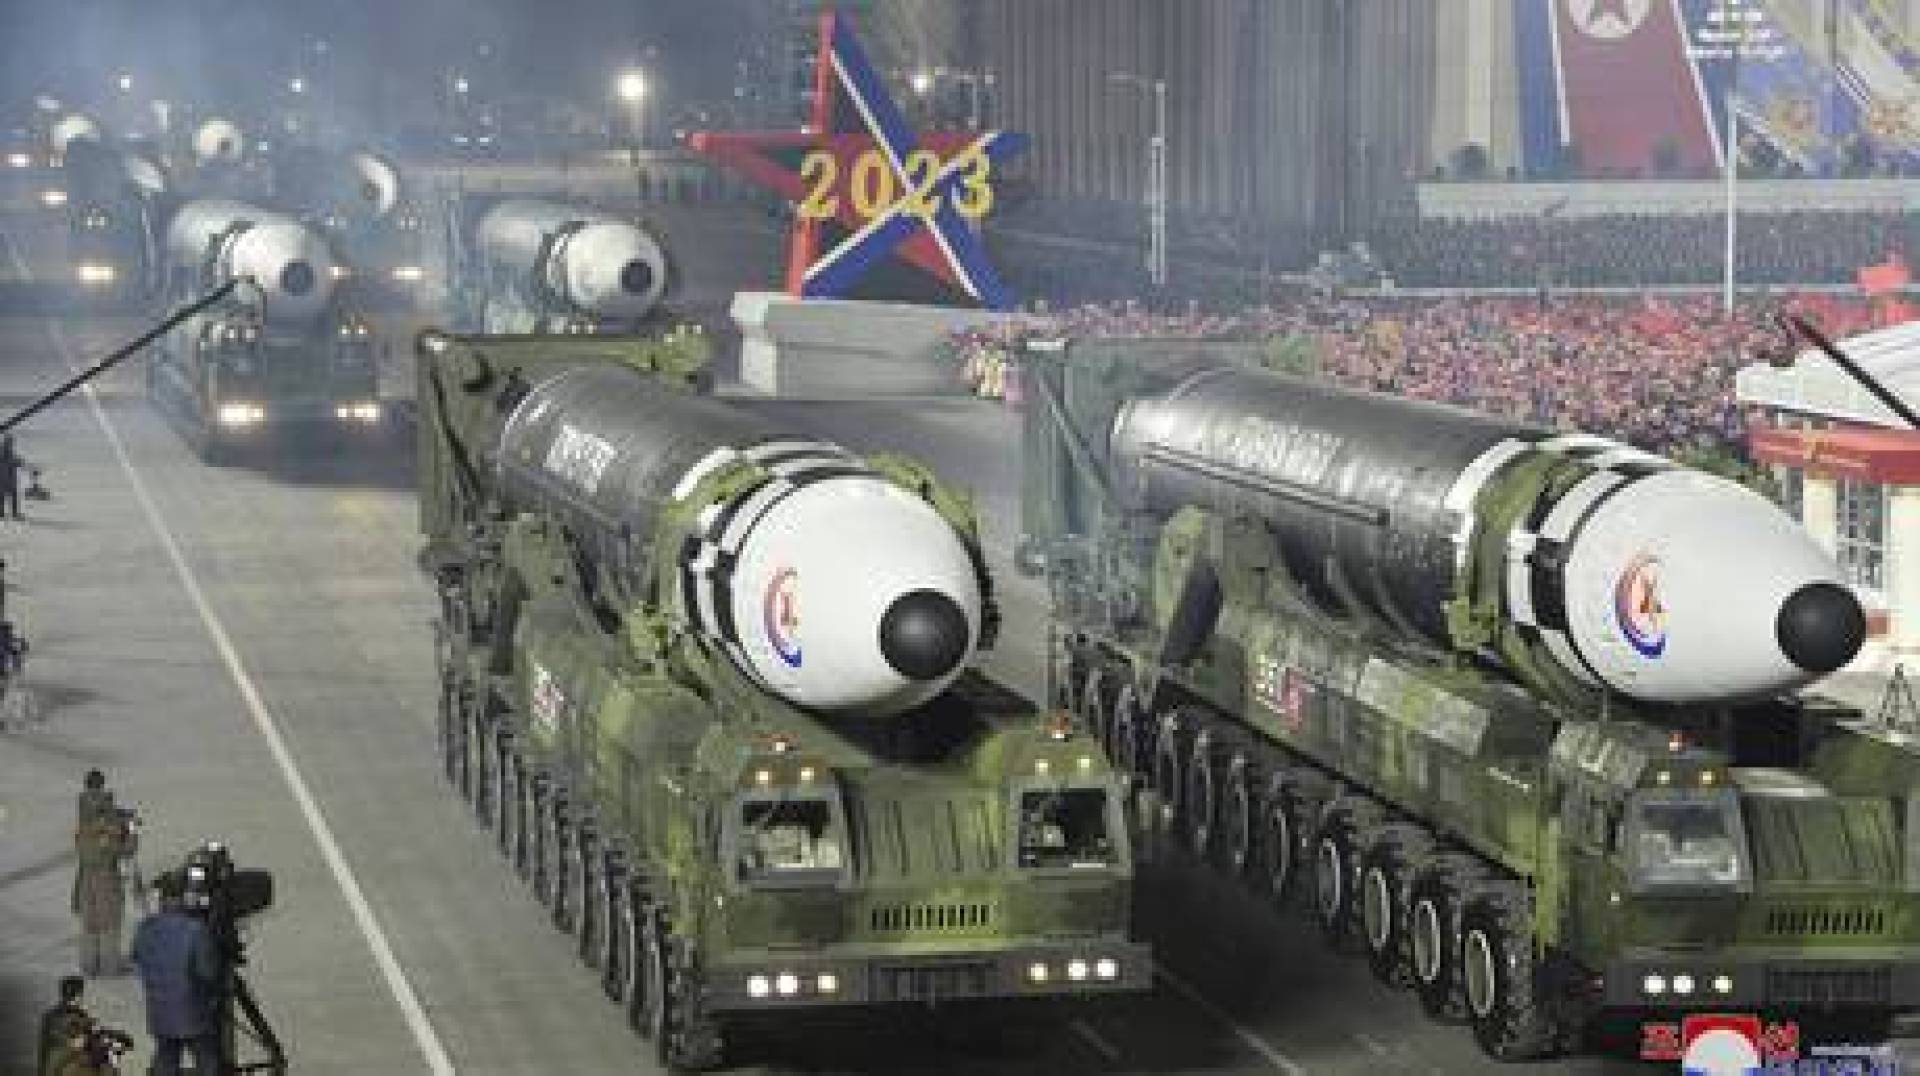 كوريا الشمالية تختبر صاروخا مزودا بمحرك من نوع جديد